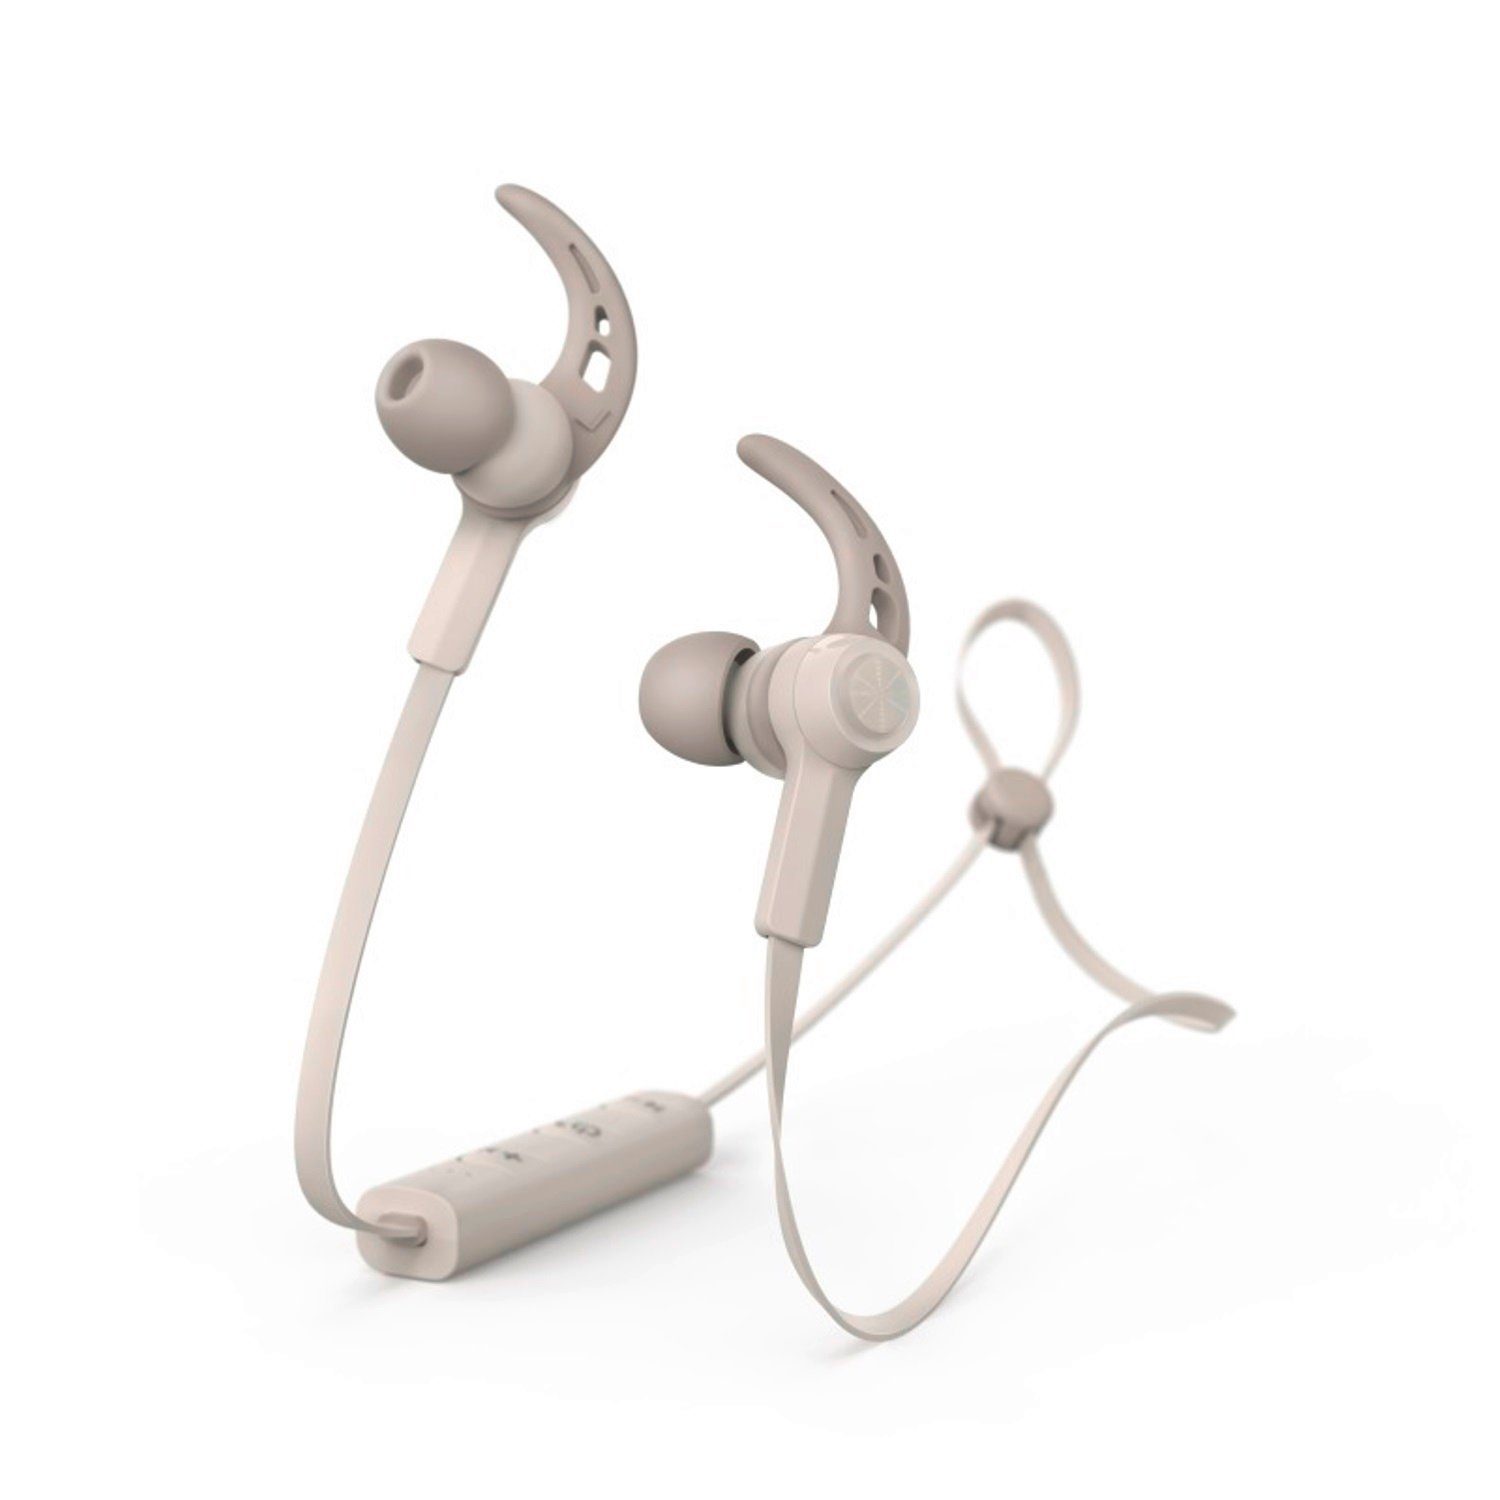 Hama Sport BT Kopfhörer Bluetooth Bluetooth mit Wiedergabe-Steuerung, Bluetooth, Mikrofon, Headset Wiedergabe-Steuerung, Ohrbügel Mikrofon) (Anruffunktion, Anruf-Funktionen, Schweißfest, Smartphone-Headset 5.0